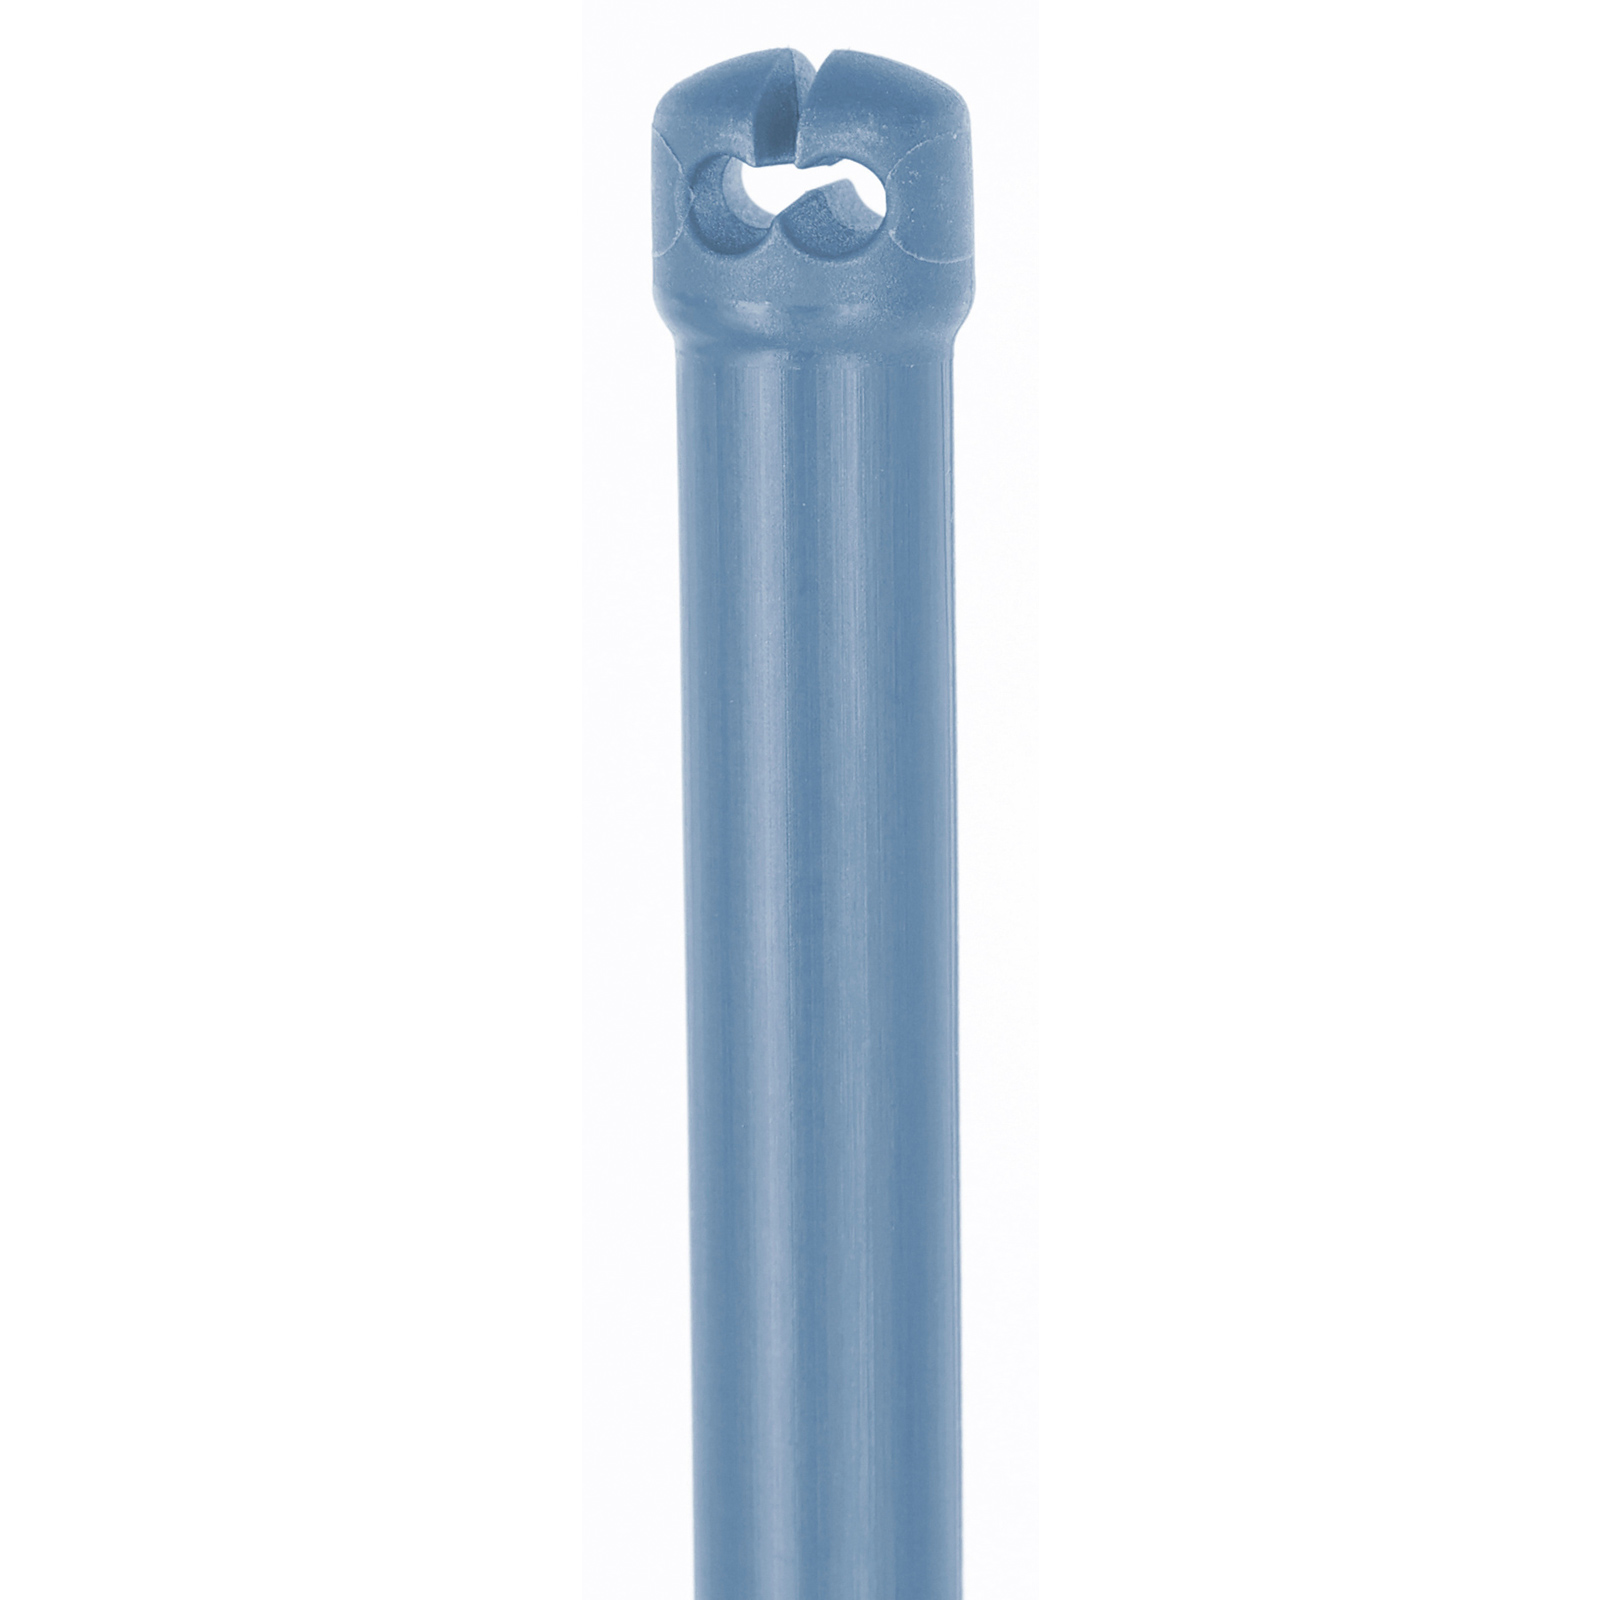 Piquet thermoplastique en fibre de verre Premium pour filet de clôture, double pointe, bleu